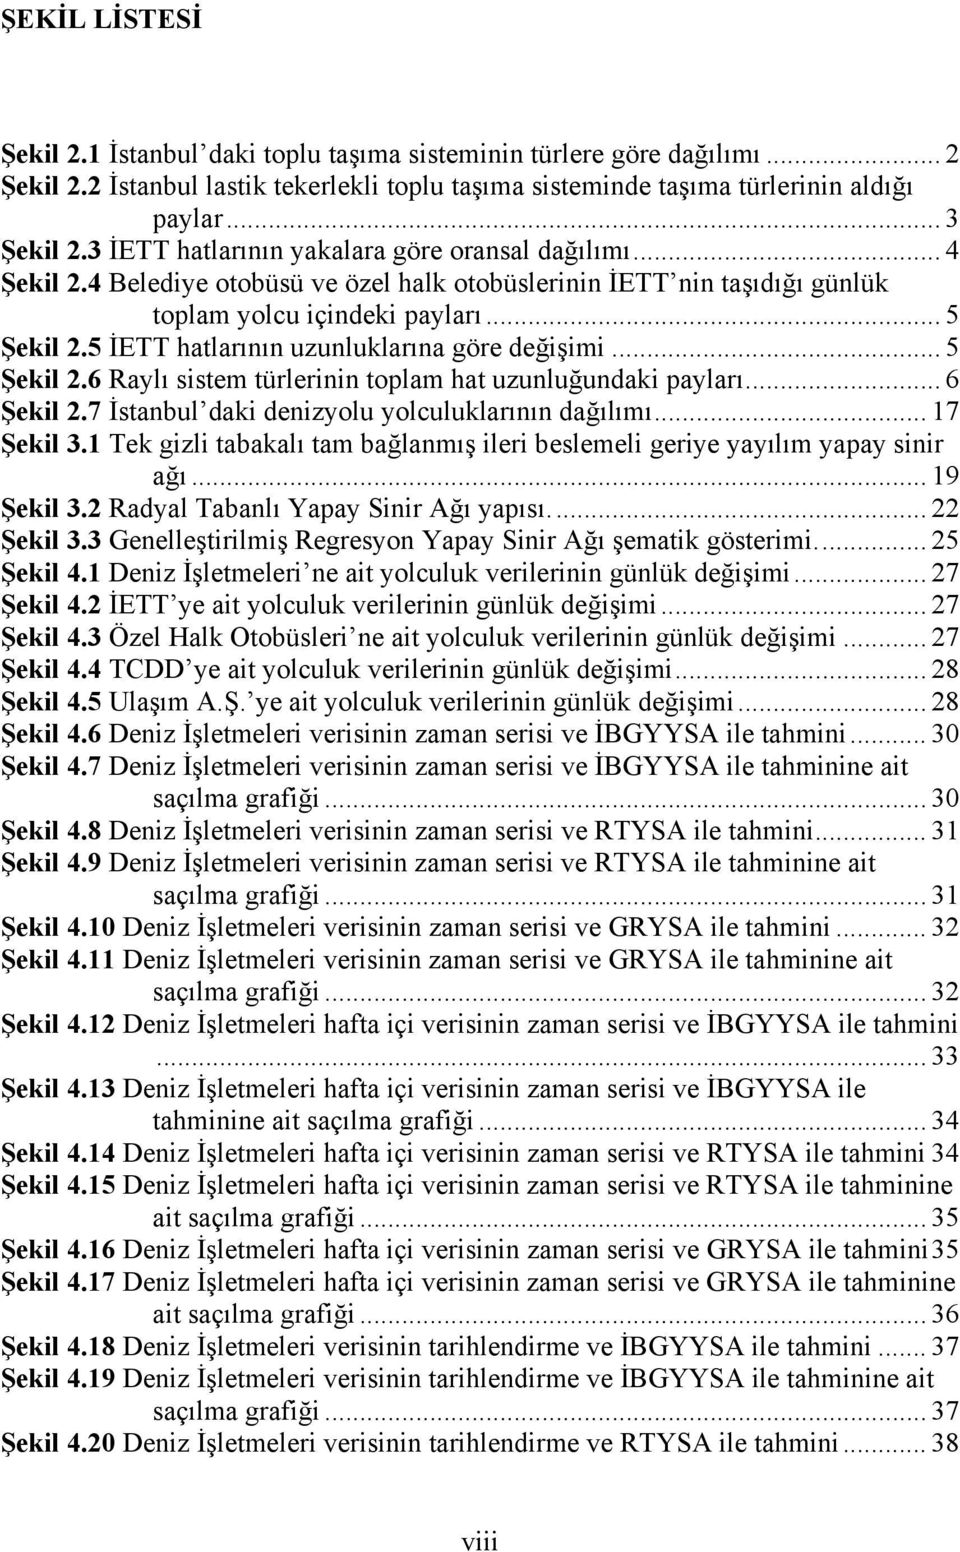 5 İETT hatlarının uzunluklarına göre değişimi... 5 Şekil 2.6 Raylı sistem türlerinin toplam hat uzunluğundaki payları... 6 Şekil 2.7 İstanbul daki denizyolu yolculuklarının dağılımı... 17 Şekil 3.